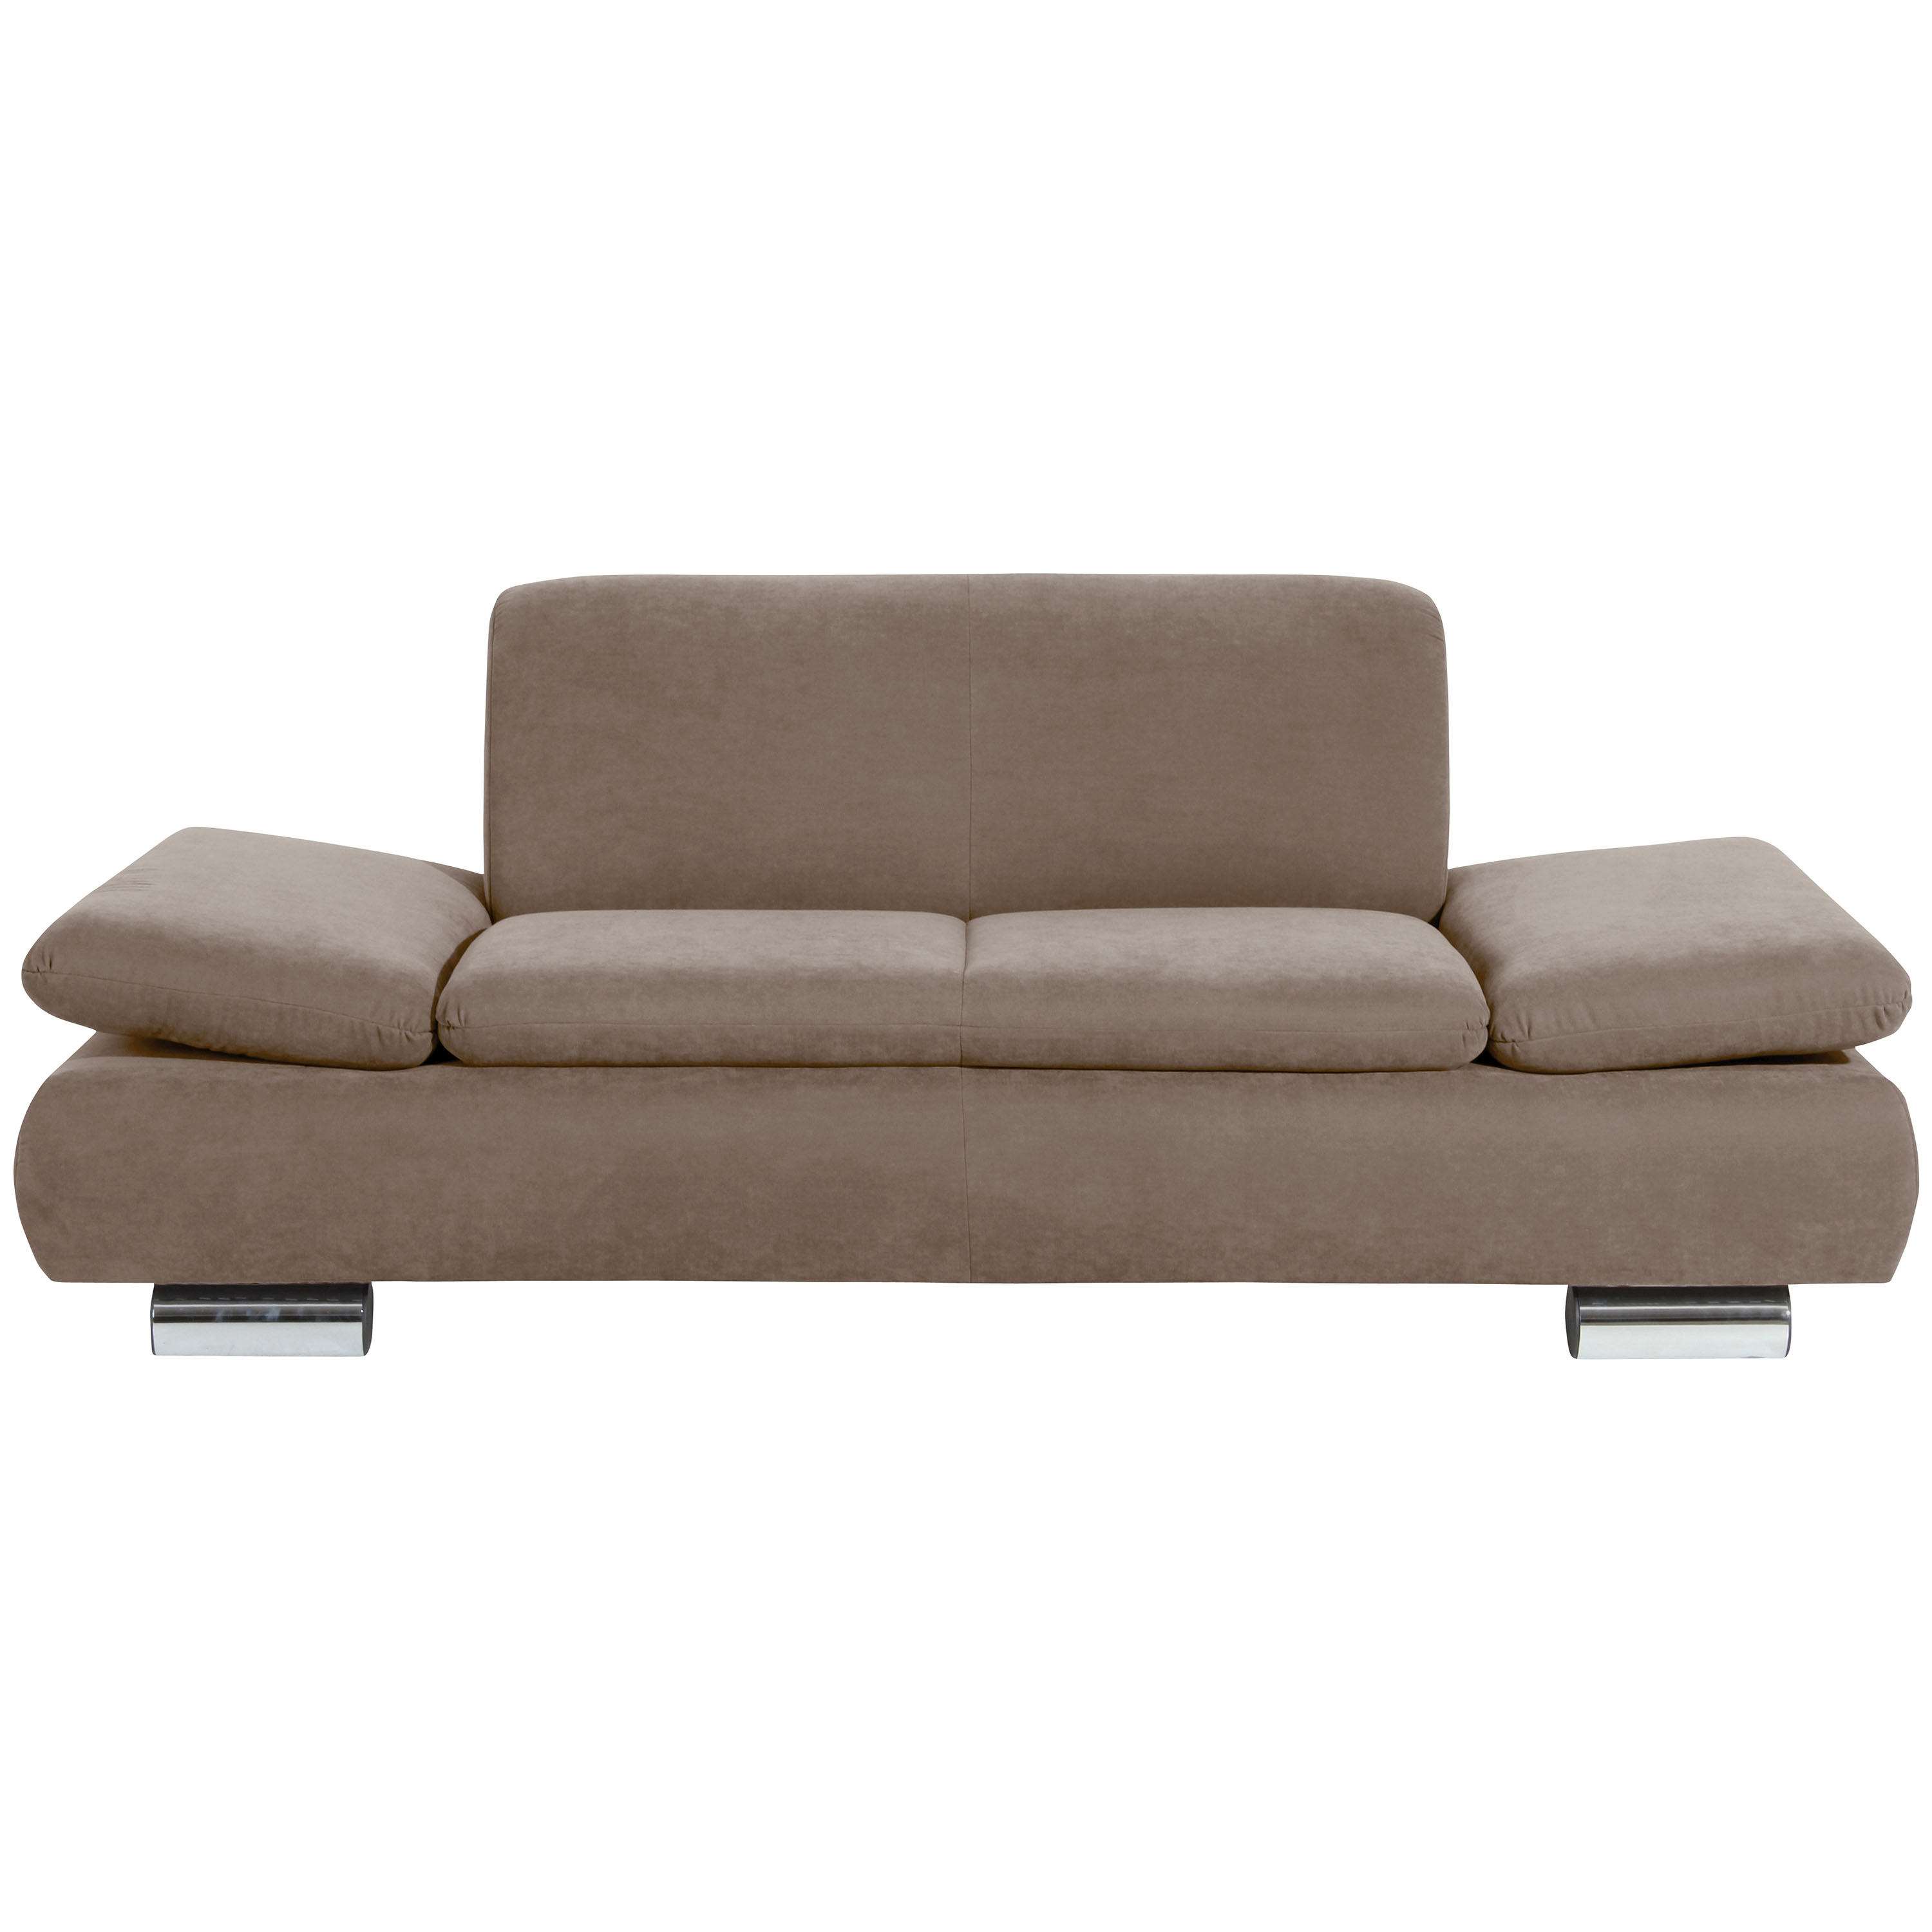 frontansicht von einem 2-sitzer sofa im farbton sahara mit verchromten metallfüssen